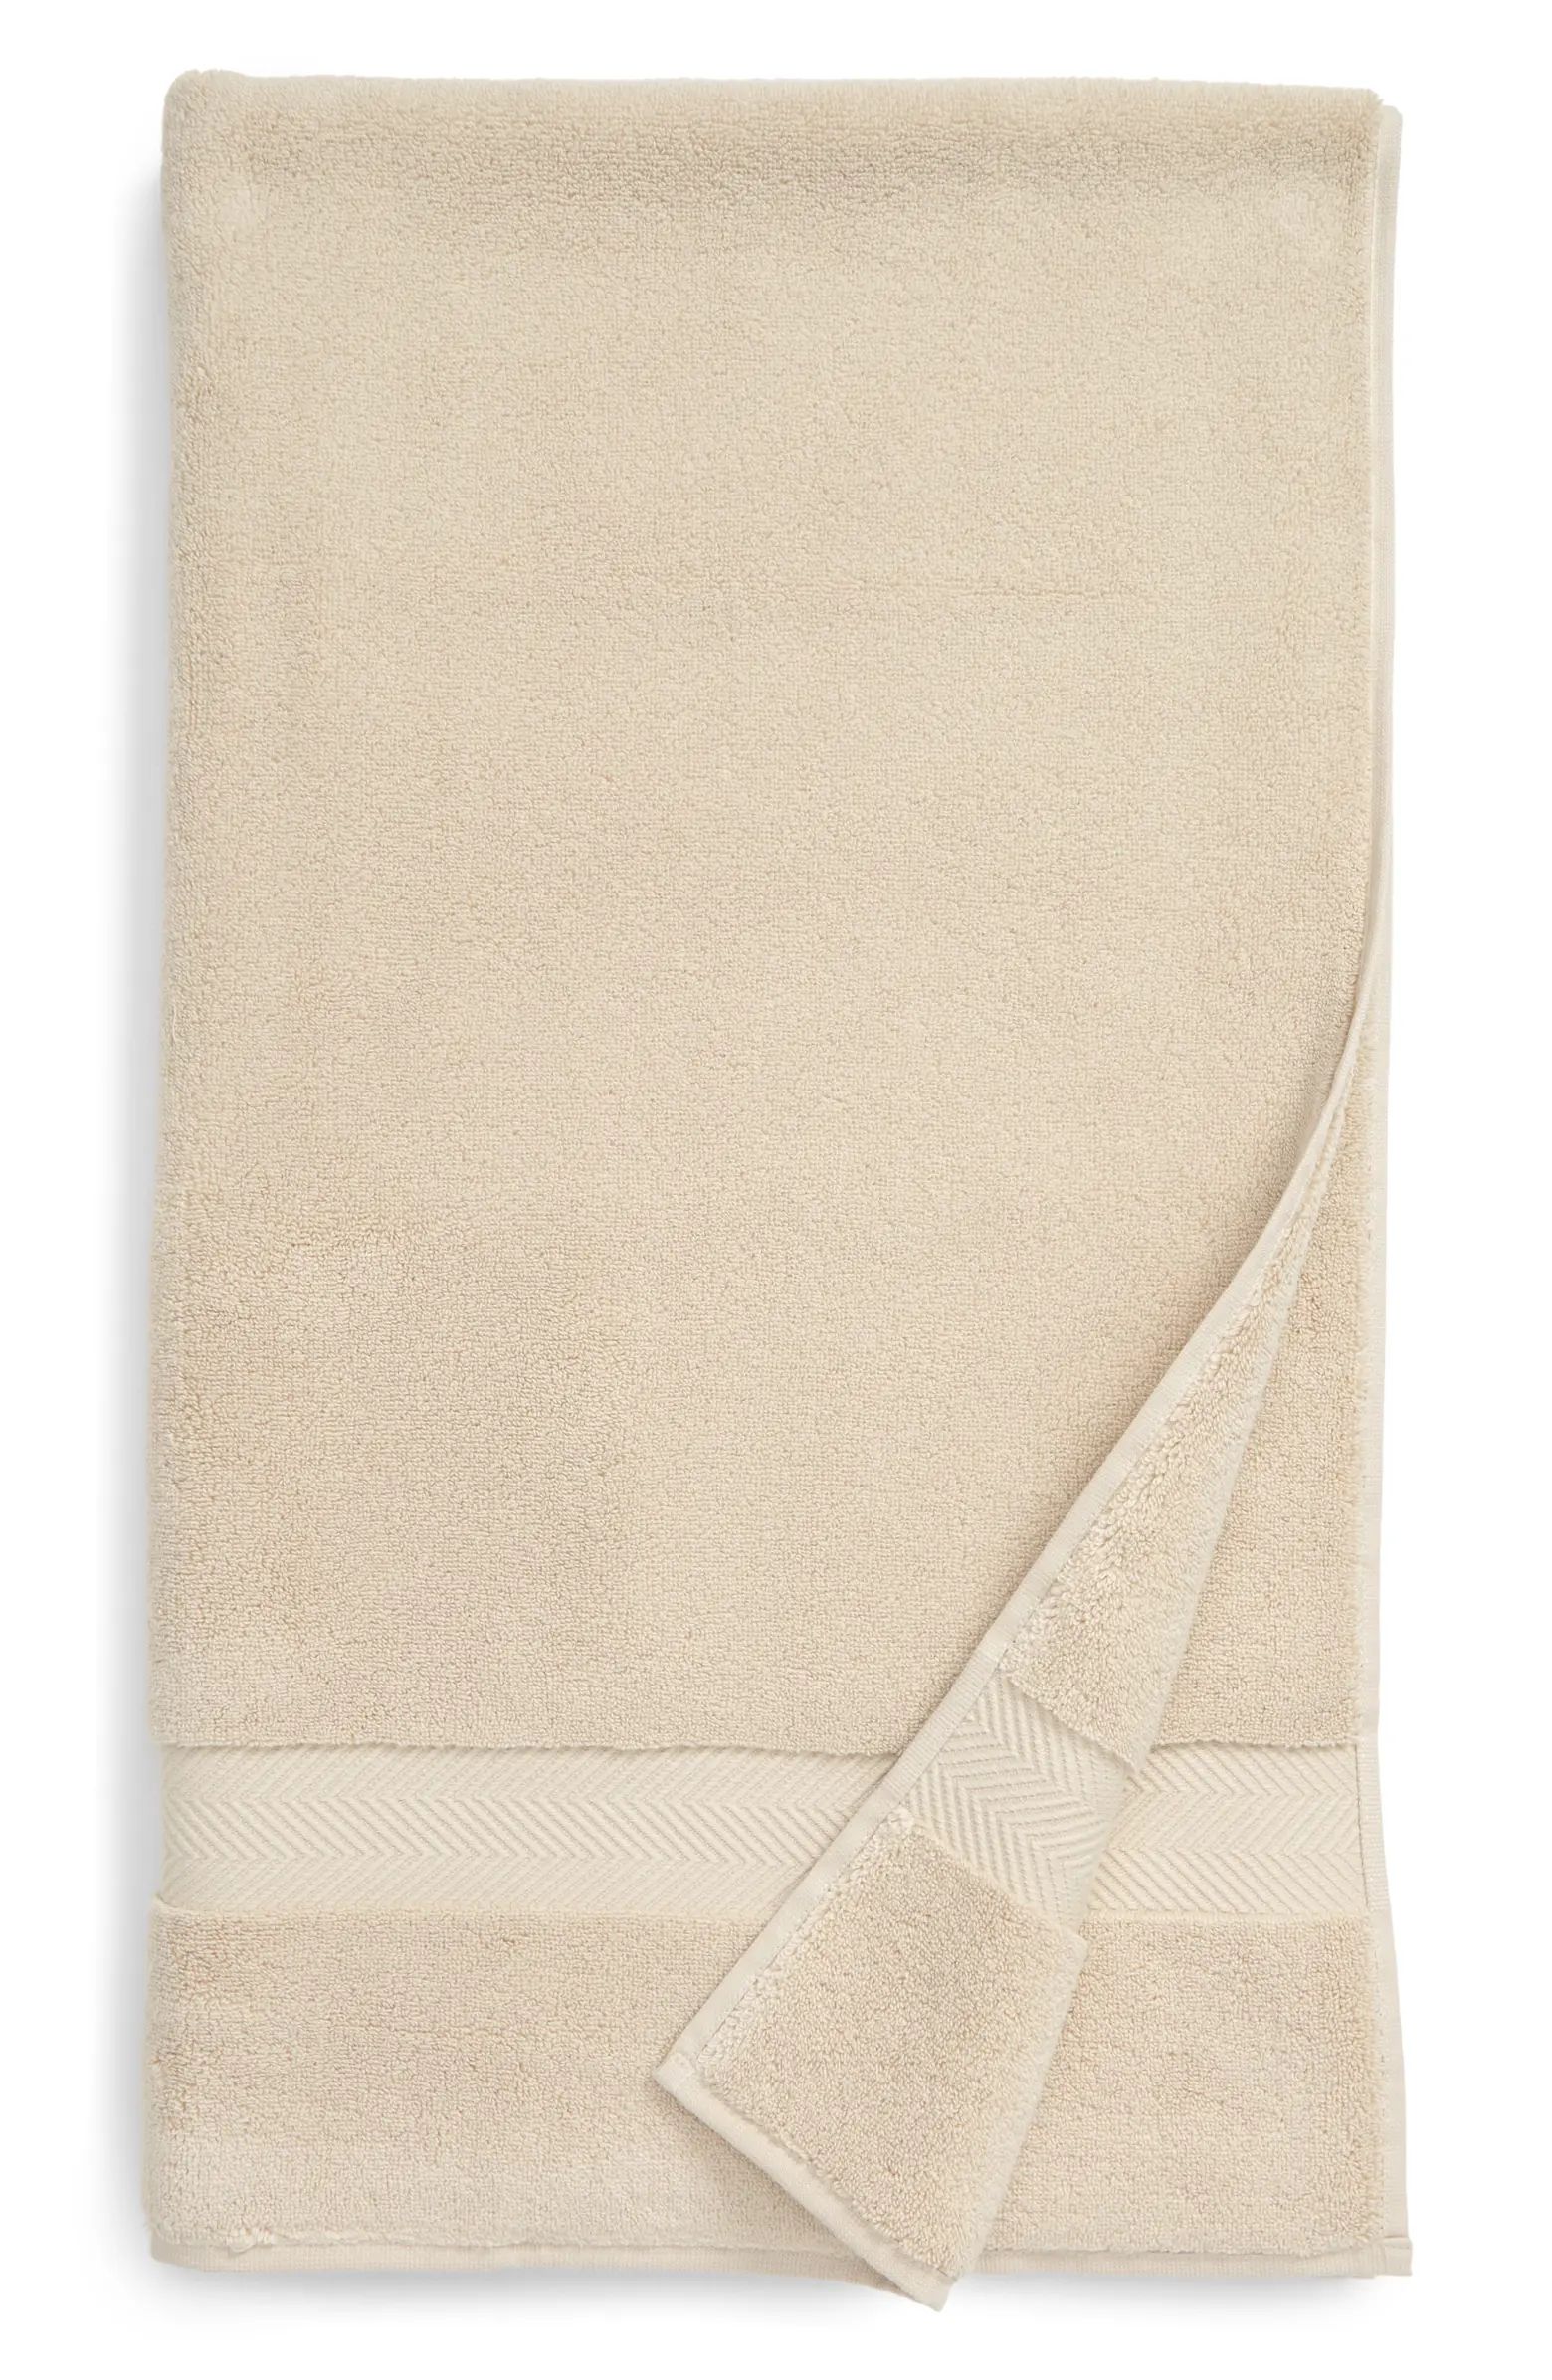 Hydrocotton Bath Towel | Nordstrom